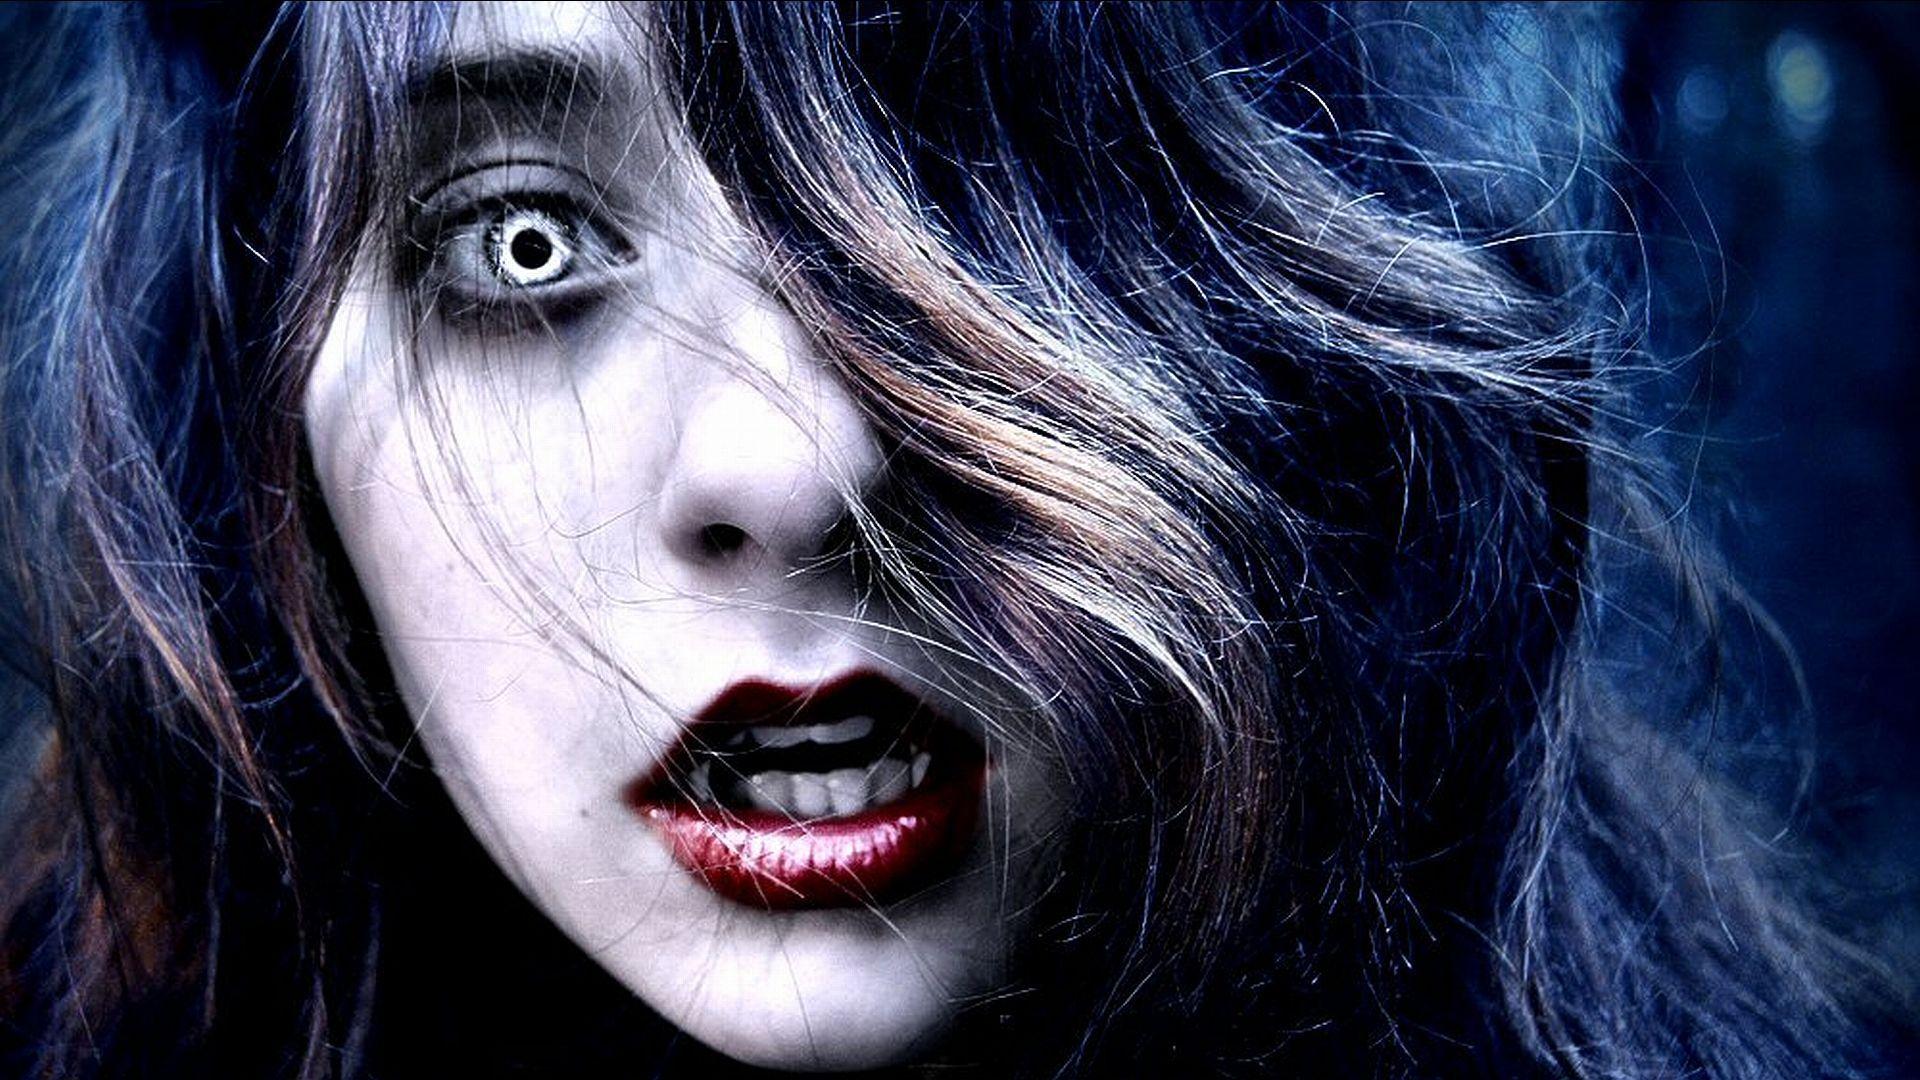 Image for Vampire Girl Full HD Wallpaper. Vampire girls, Vampire